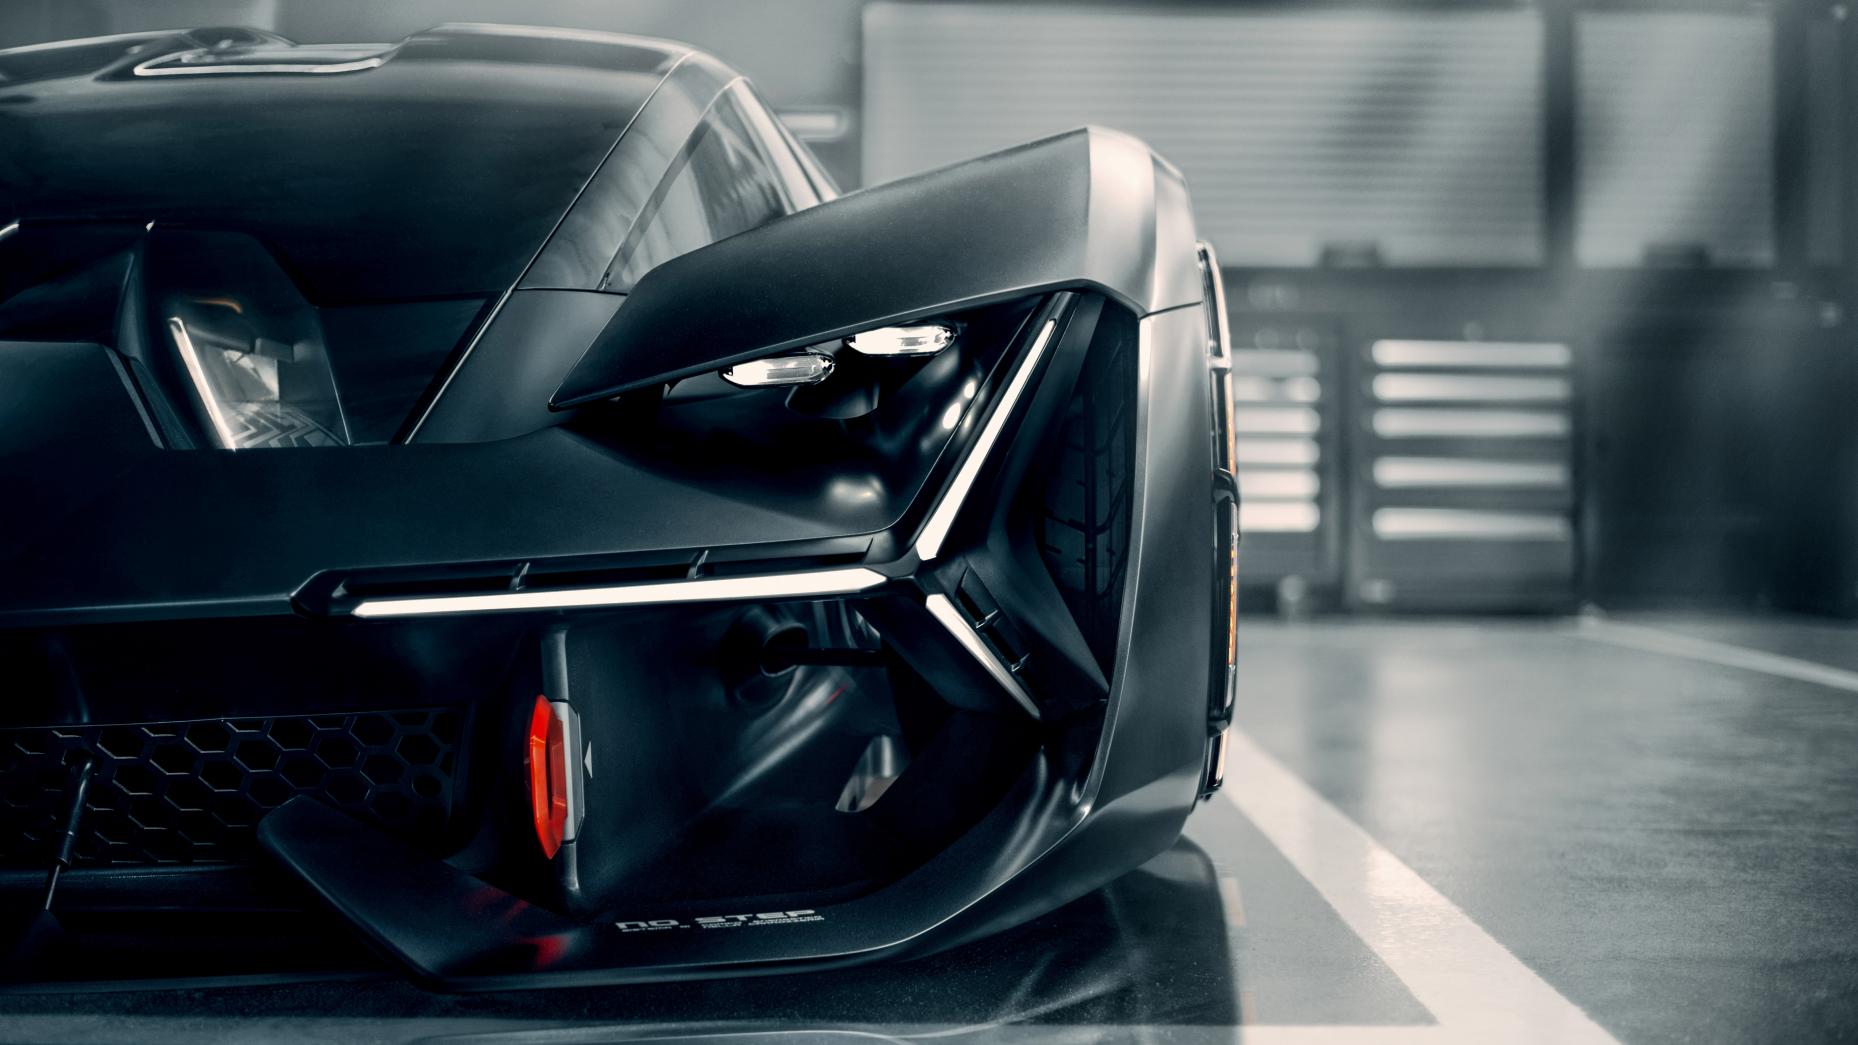 Lamborghini Terzo Millennio, elektrikli araba, geleceğin teknolojileri https://huglero.com/